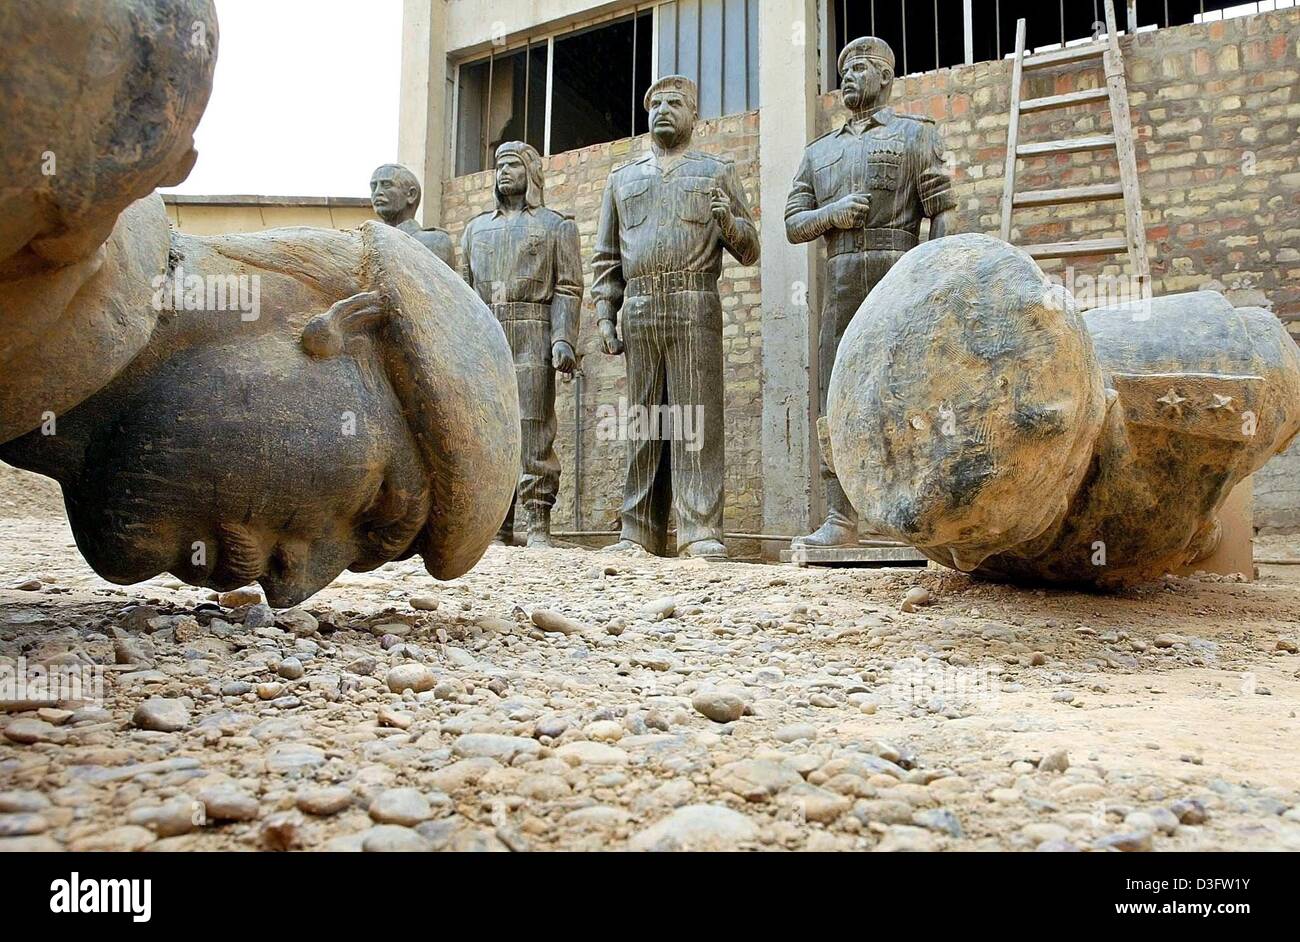 (Afp) - statues et bustes de l'ancien président irakien Saddam Hussein se trouvent dans la terre dans la cour d'une usine qui produit des répliques du dictateur, à Bagdad, le 27 avril 2003. Le sort de Saddam Hussein et ses fils après leur régime a été renversé demeurent inconnus. Banque D'Images